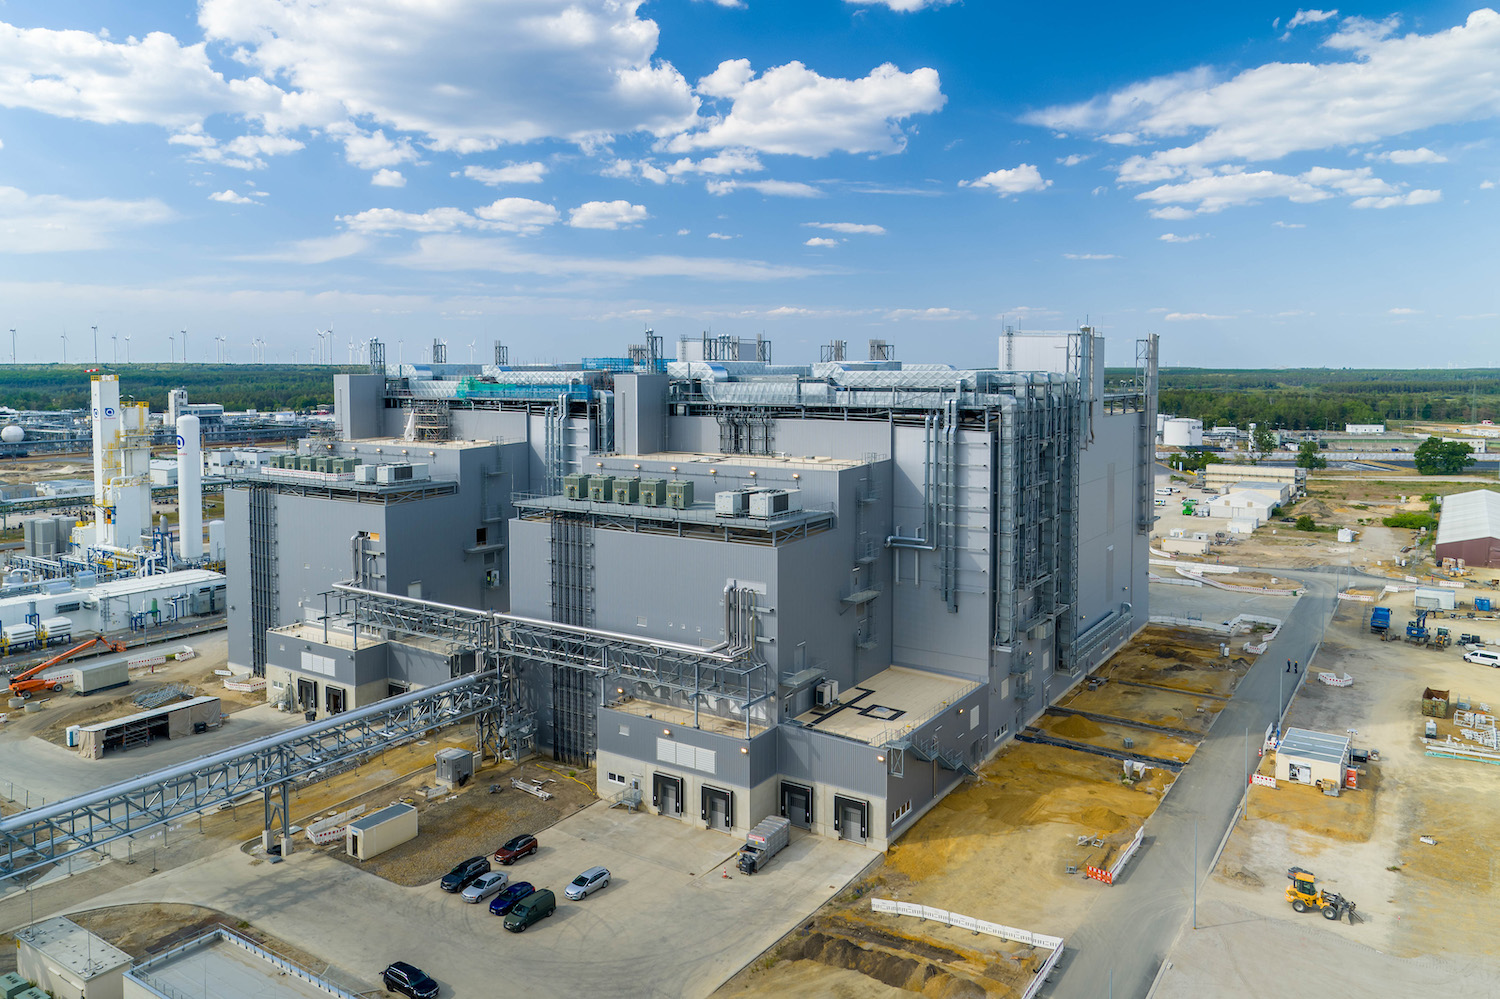 Produktionsanlage für Kathodenmate-rialien in Schwarzheide / Cathode active materials plant in Schwarzheide, Germany